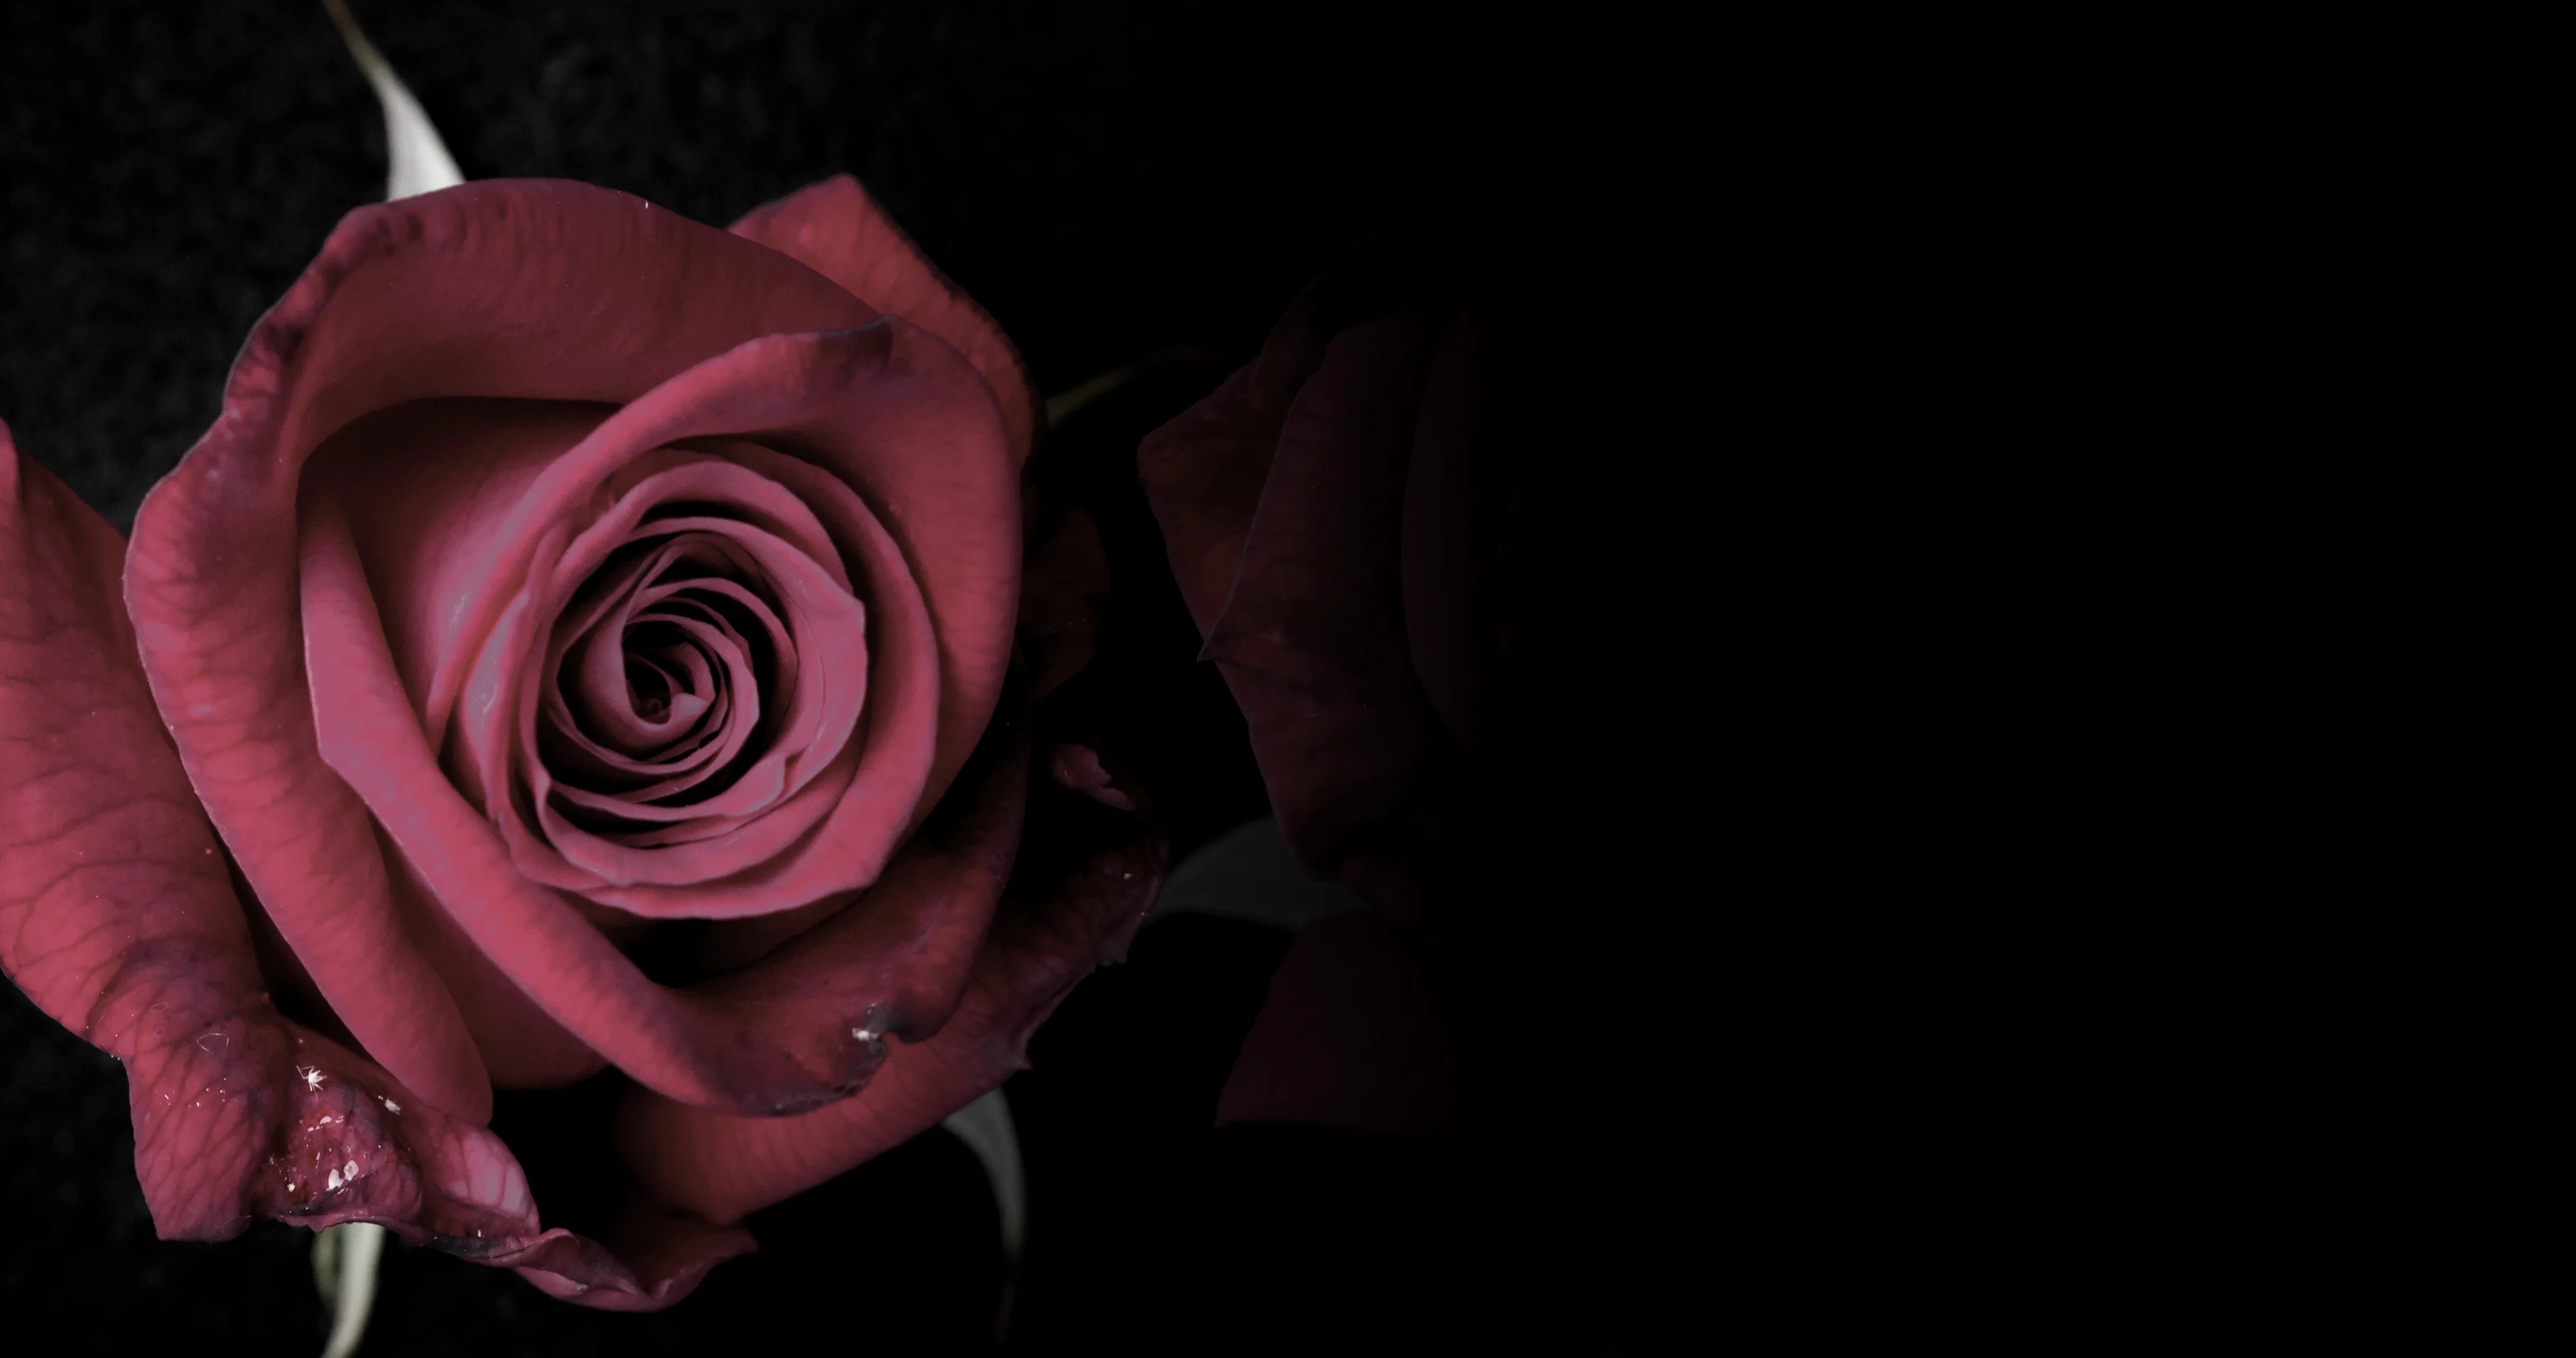 Những bông hoa hồng đỏ nở trên nền đen đầy bí ẩn và lãng mạn sẽ thu hút mọi ánh nhìn. Hãy tận hưởng cảm giác thăng hoa khi ngắm nhìn bức ảnh này.